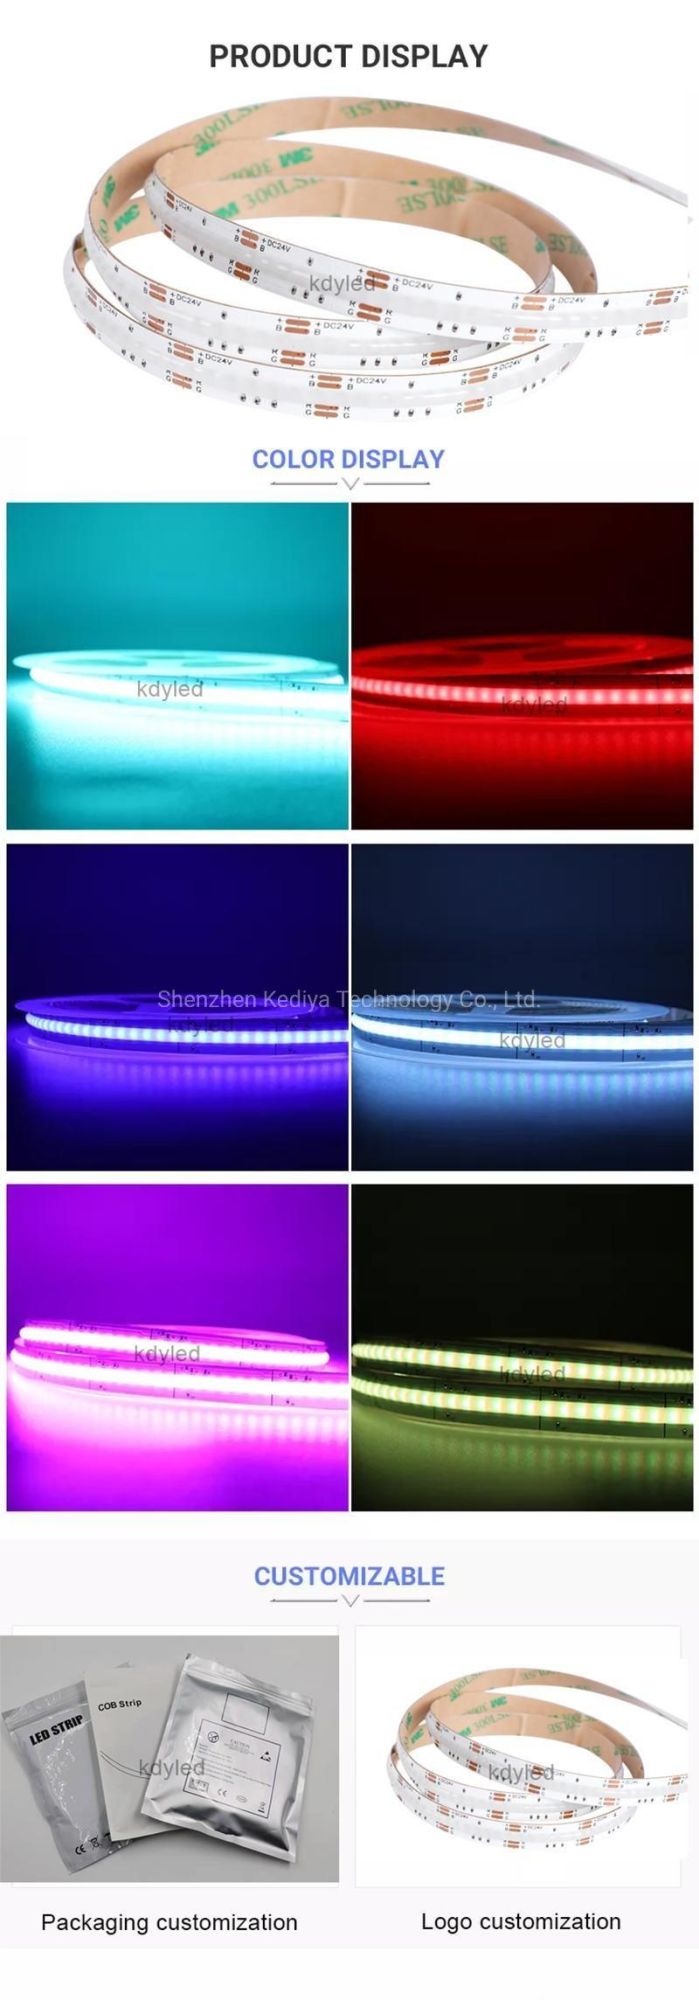 New Arrival COB RGB LED Strip 768LEDs/M 24V 756LEDs/M 12V IP20 IP67 Waterproof Flexible RGB LED Strip Light